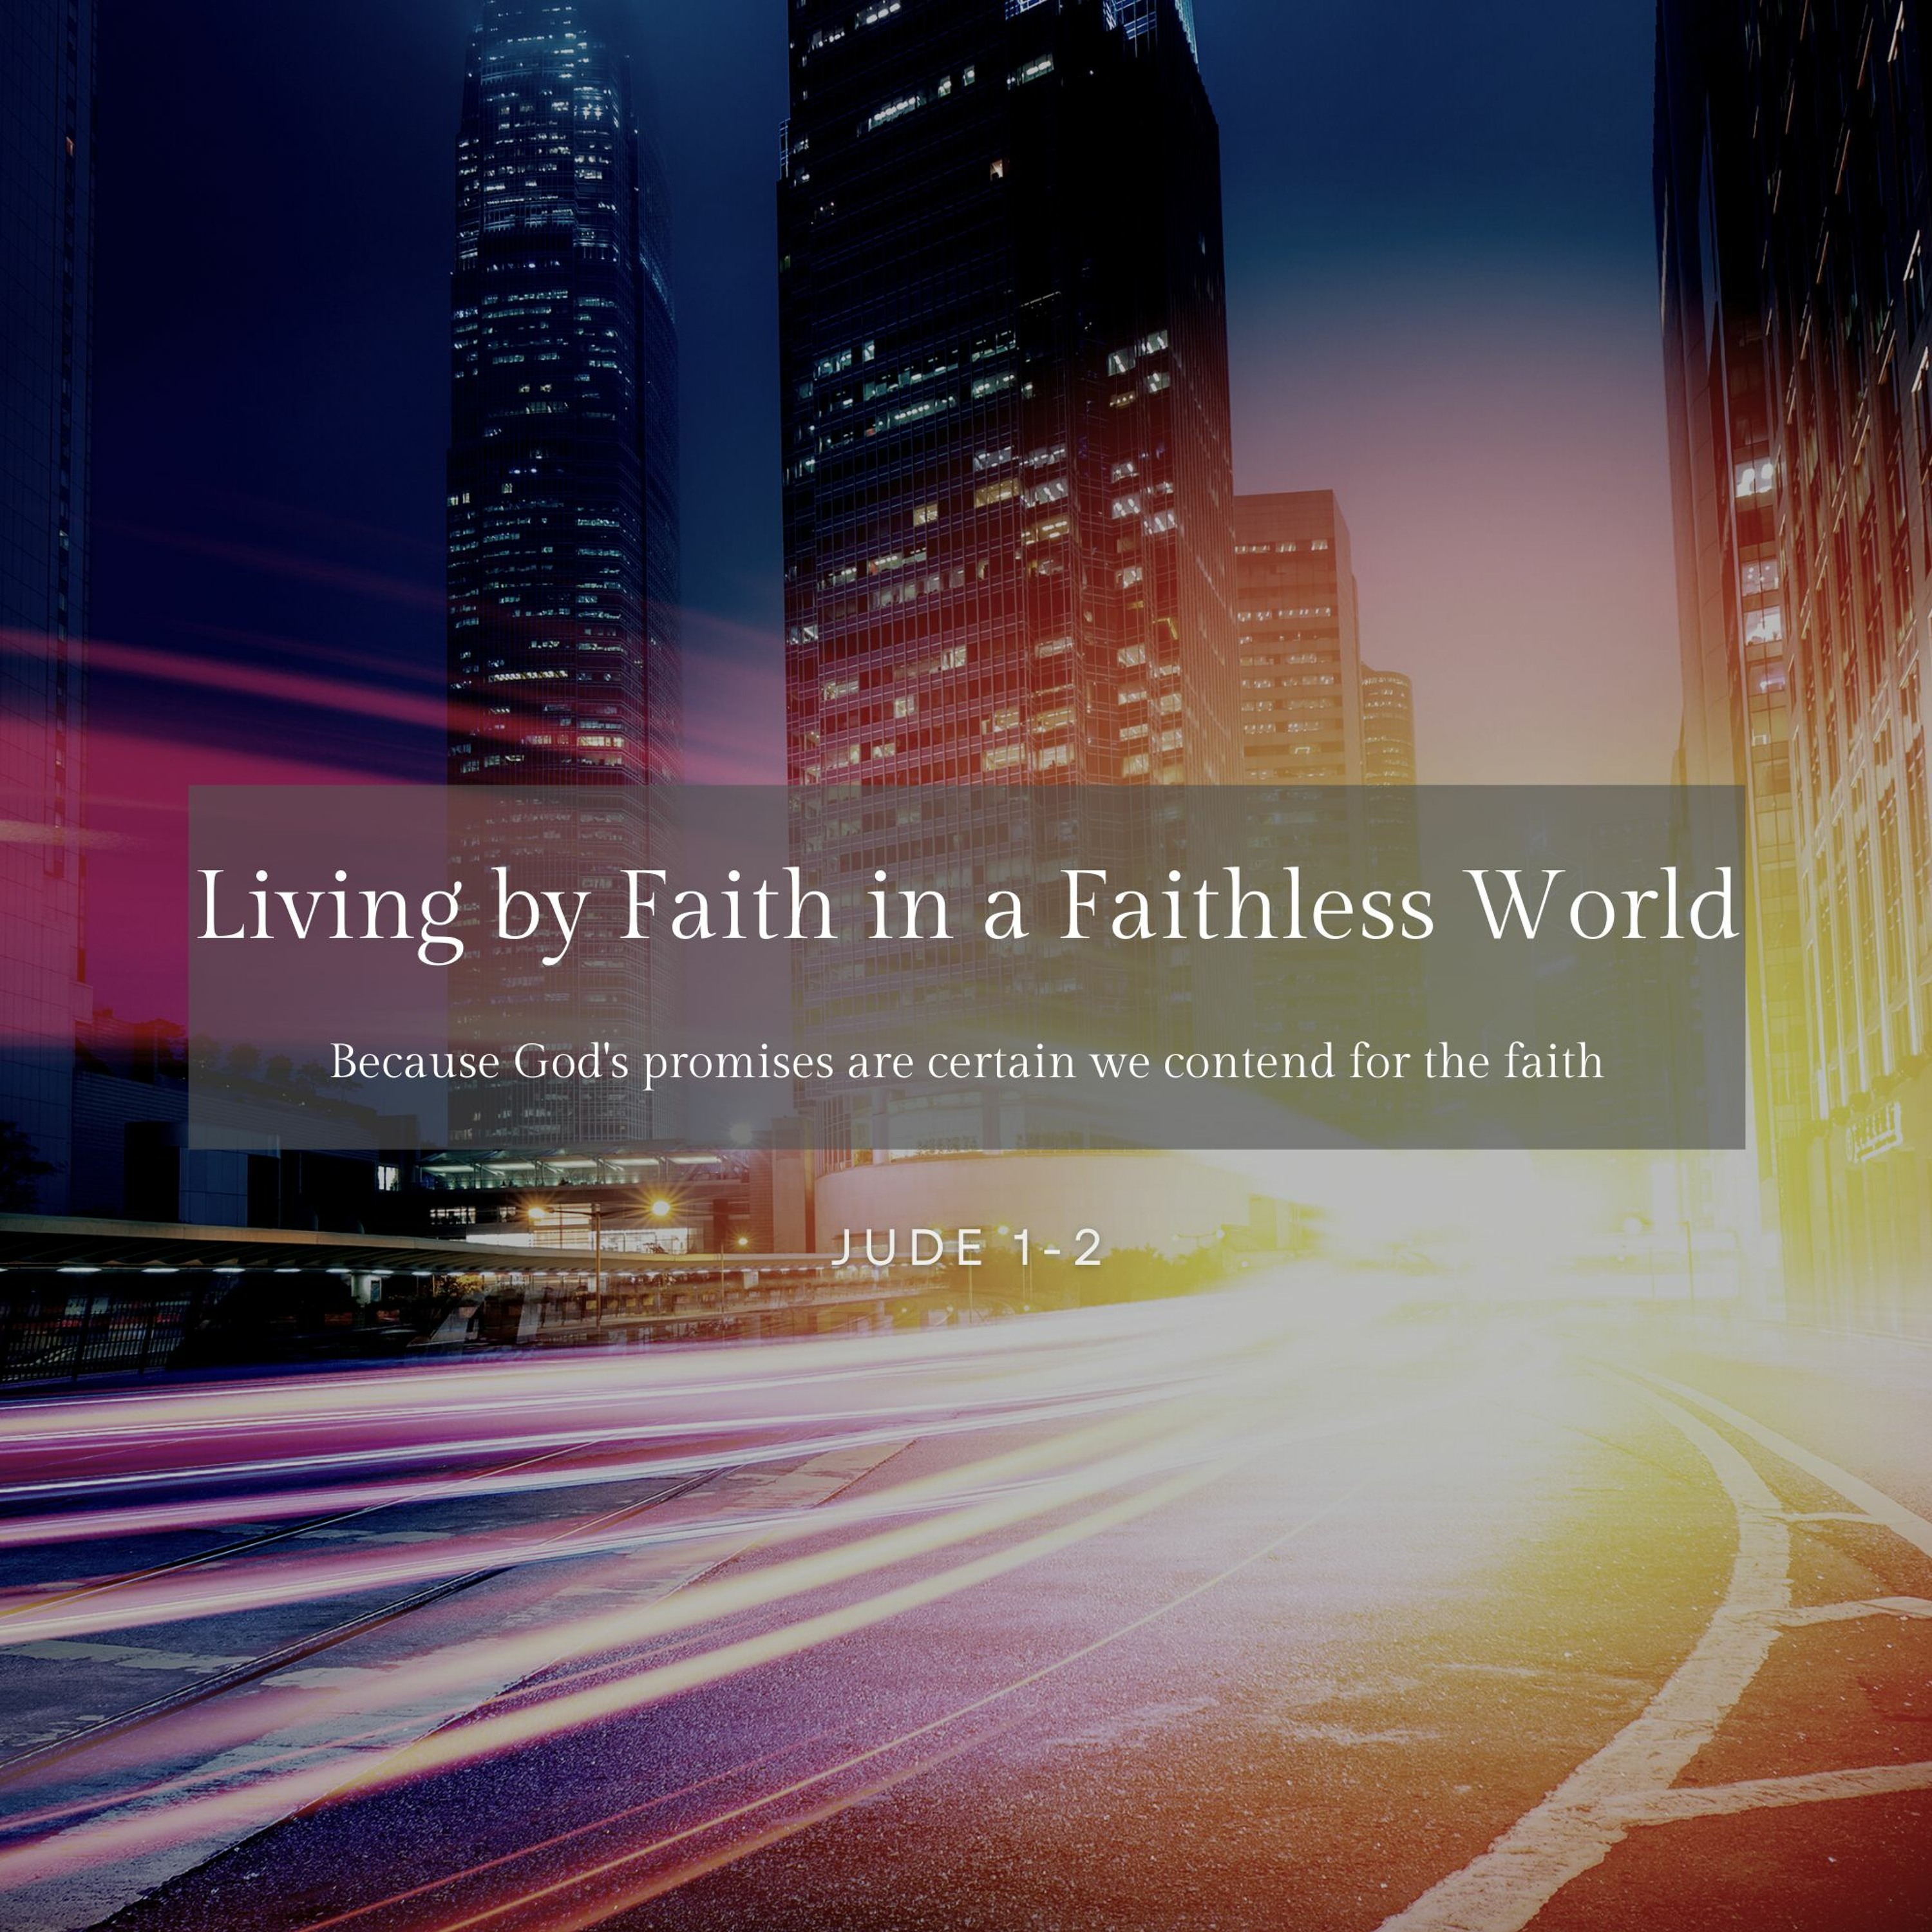 Living By Faith In A Faithless World (Jude 1-2)